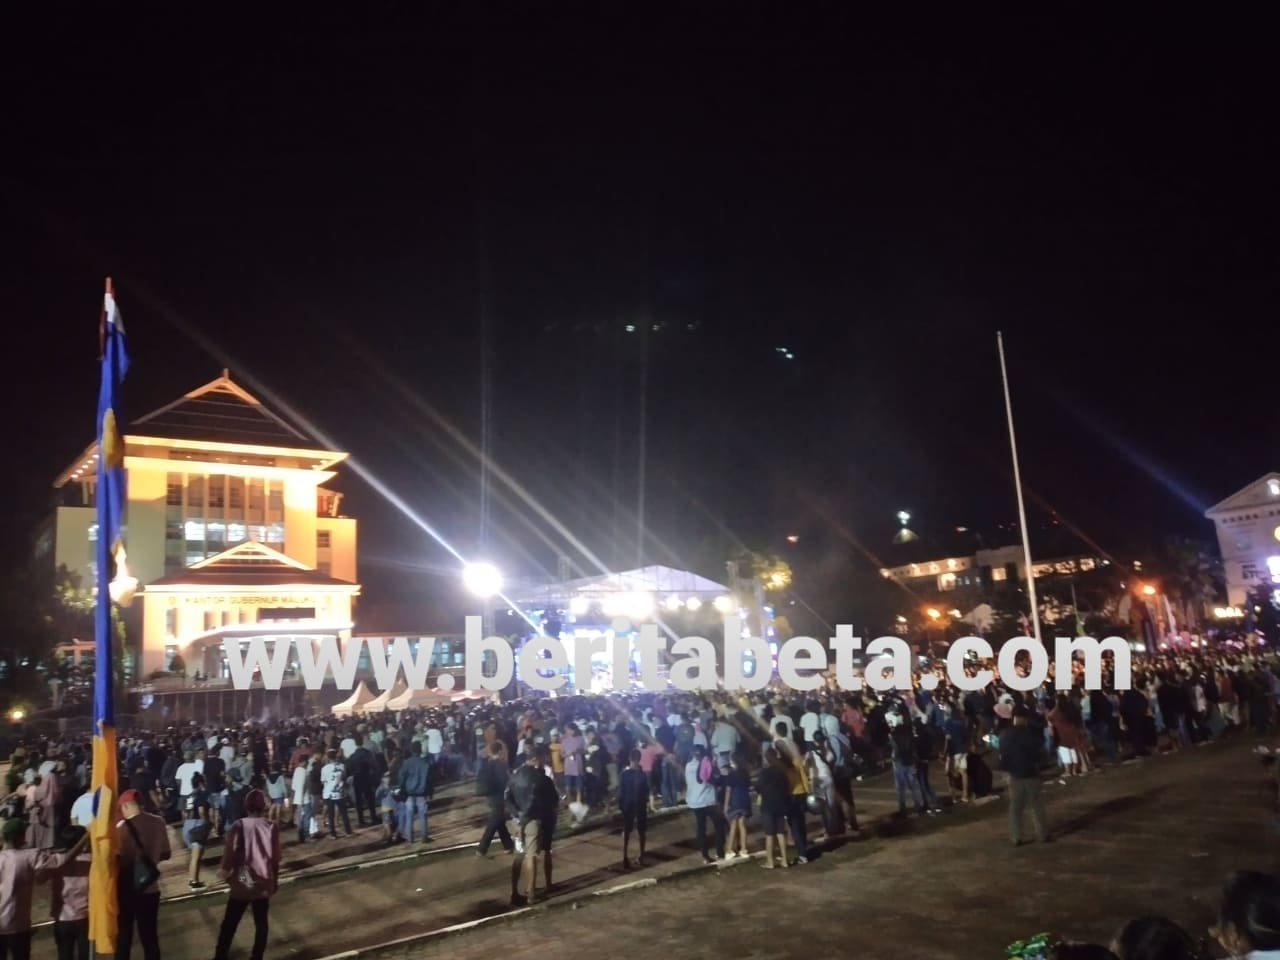 Foto Ilustrasi Perayaan HUT Ambon City of Music ke-2 di Lapangan Merdeka Jalan Pattimura No.1 Kecamatan Sirimau Kota Ambon, Provinsi Maluku pada Jumat malam, 29 Otober 2021. /dokumentasi; beritabeta.com